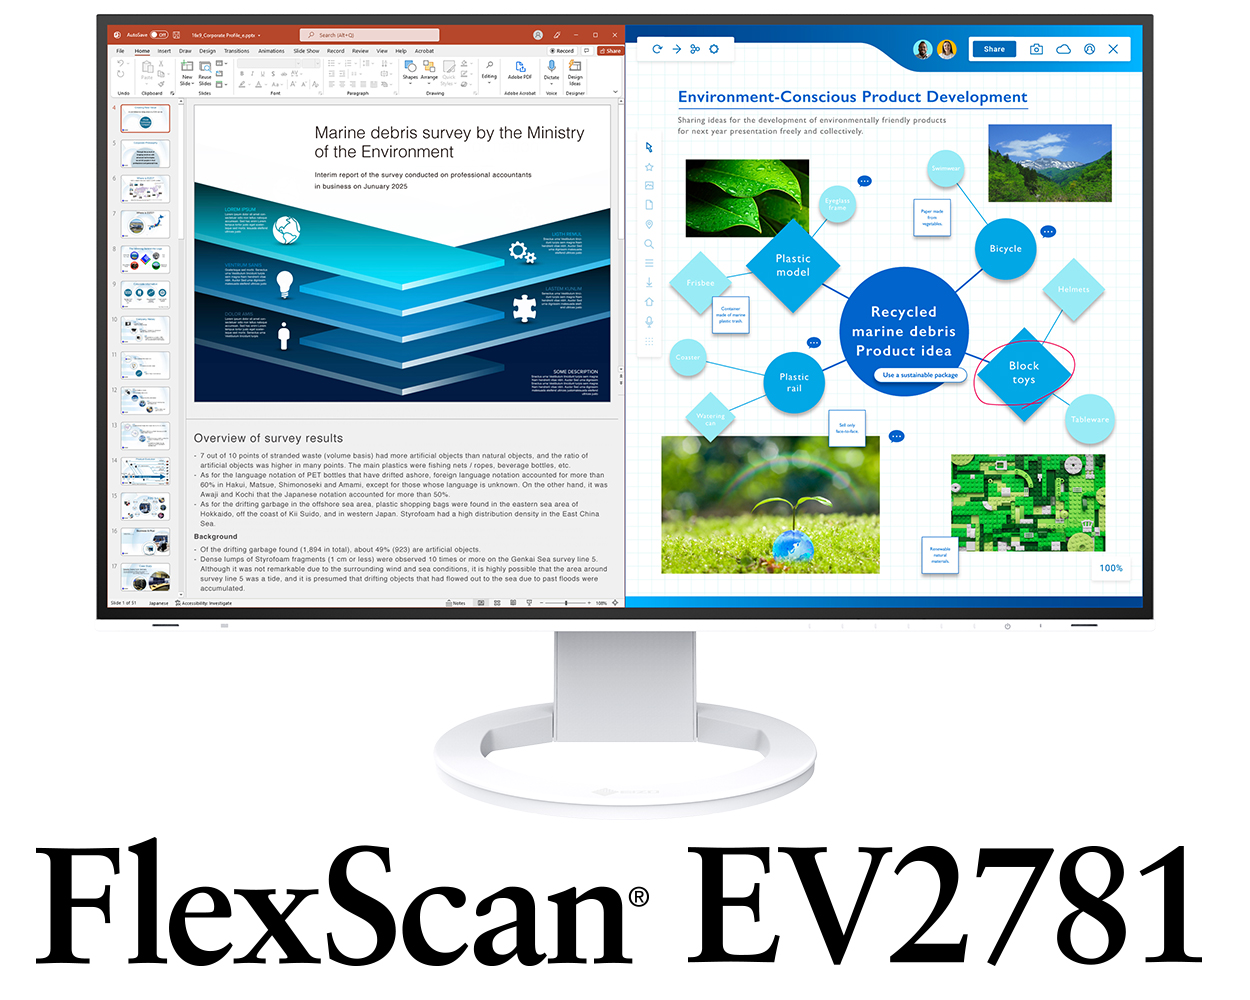 FlexScan EV2781